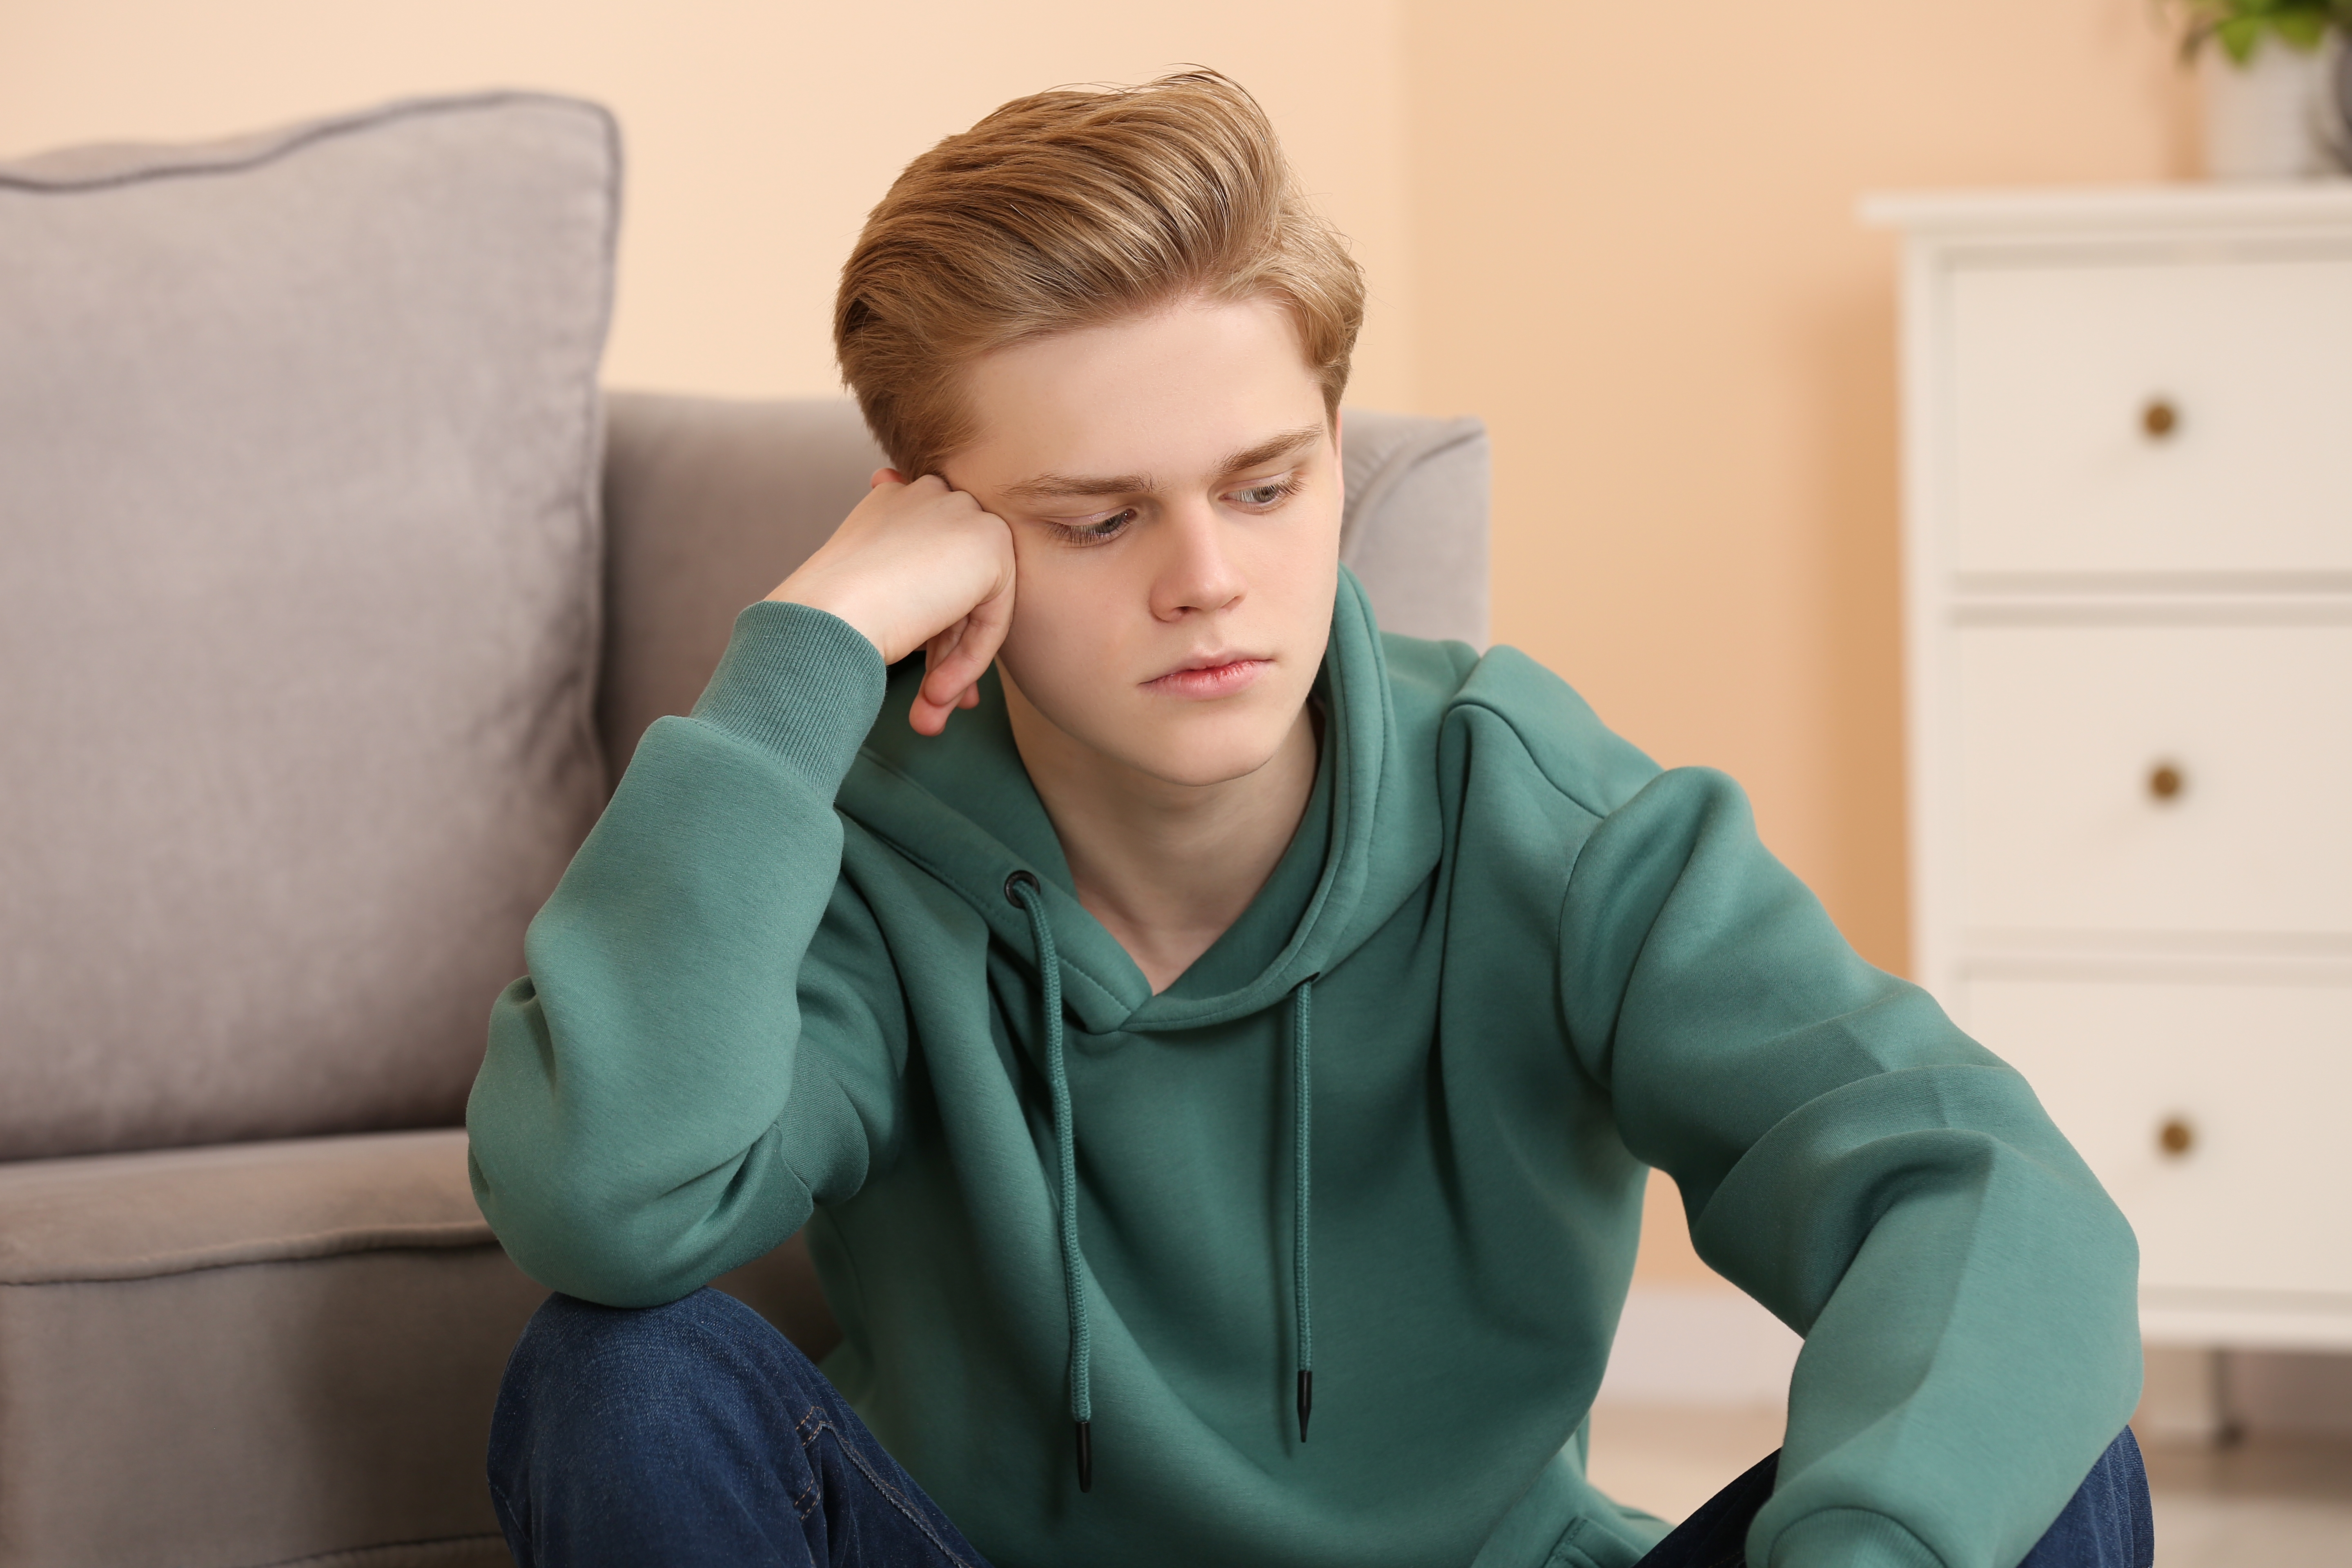 Teenage boy sulking | Source: Shutterstock